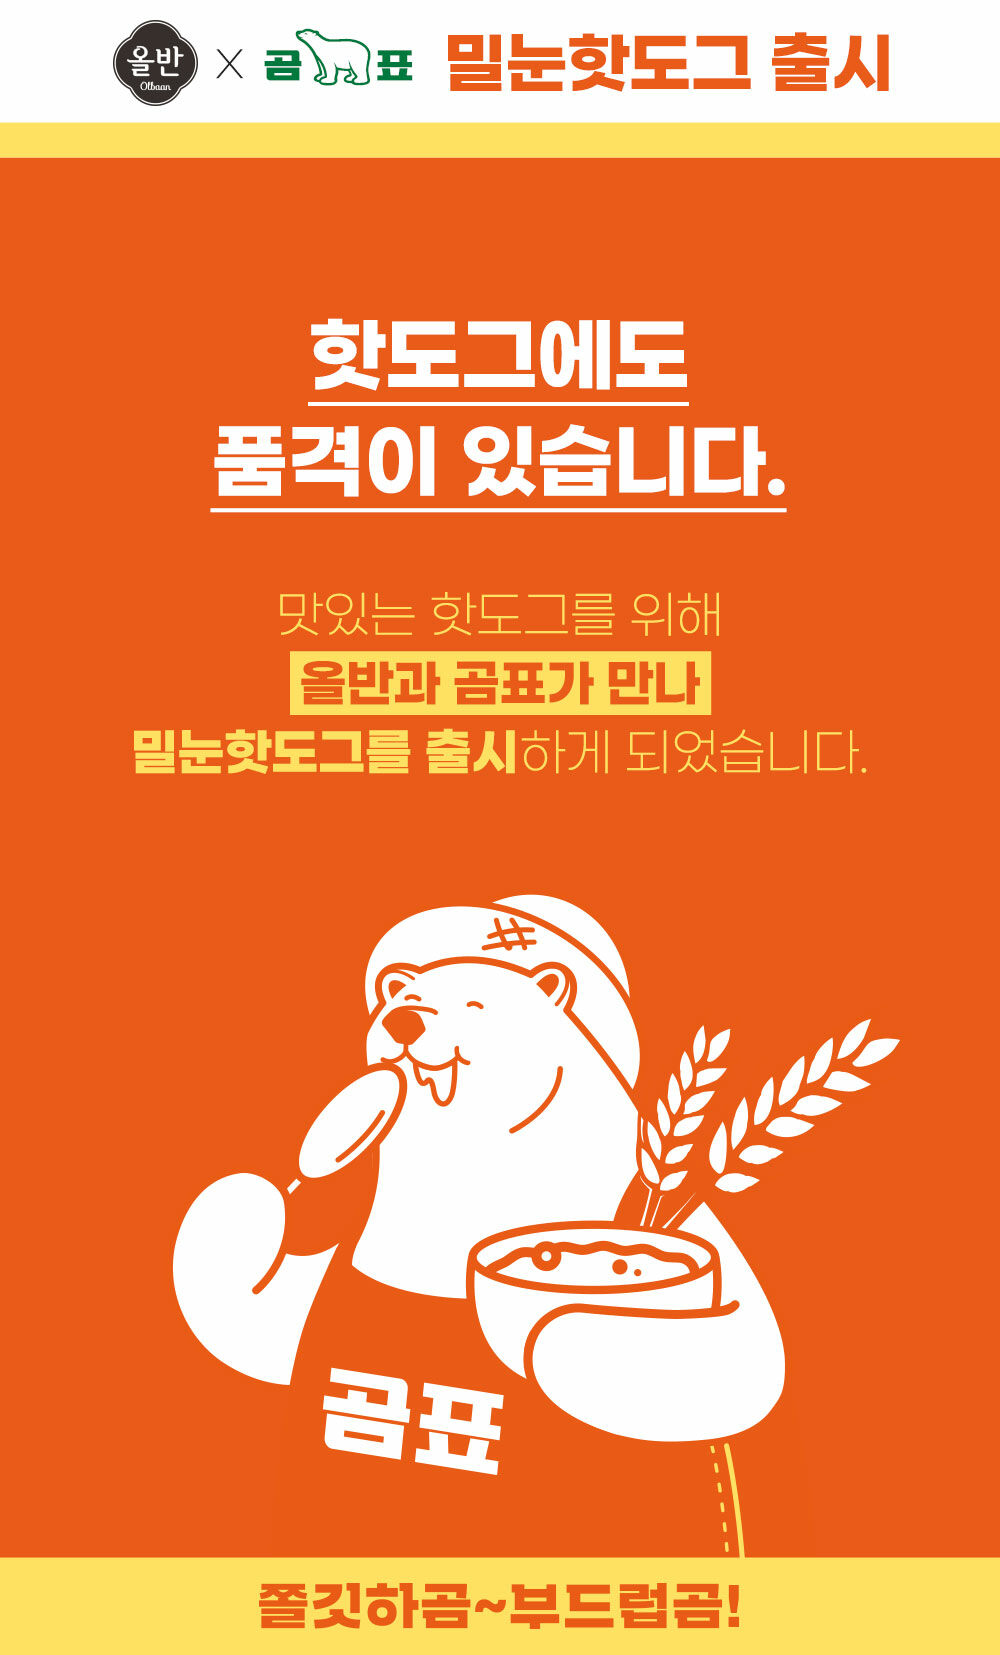 韓國食品-[Olbaan] 熊牌麥芽熱狗棒 (馬蘇里拉芝士) 80g